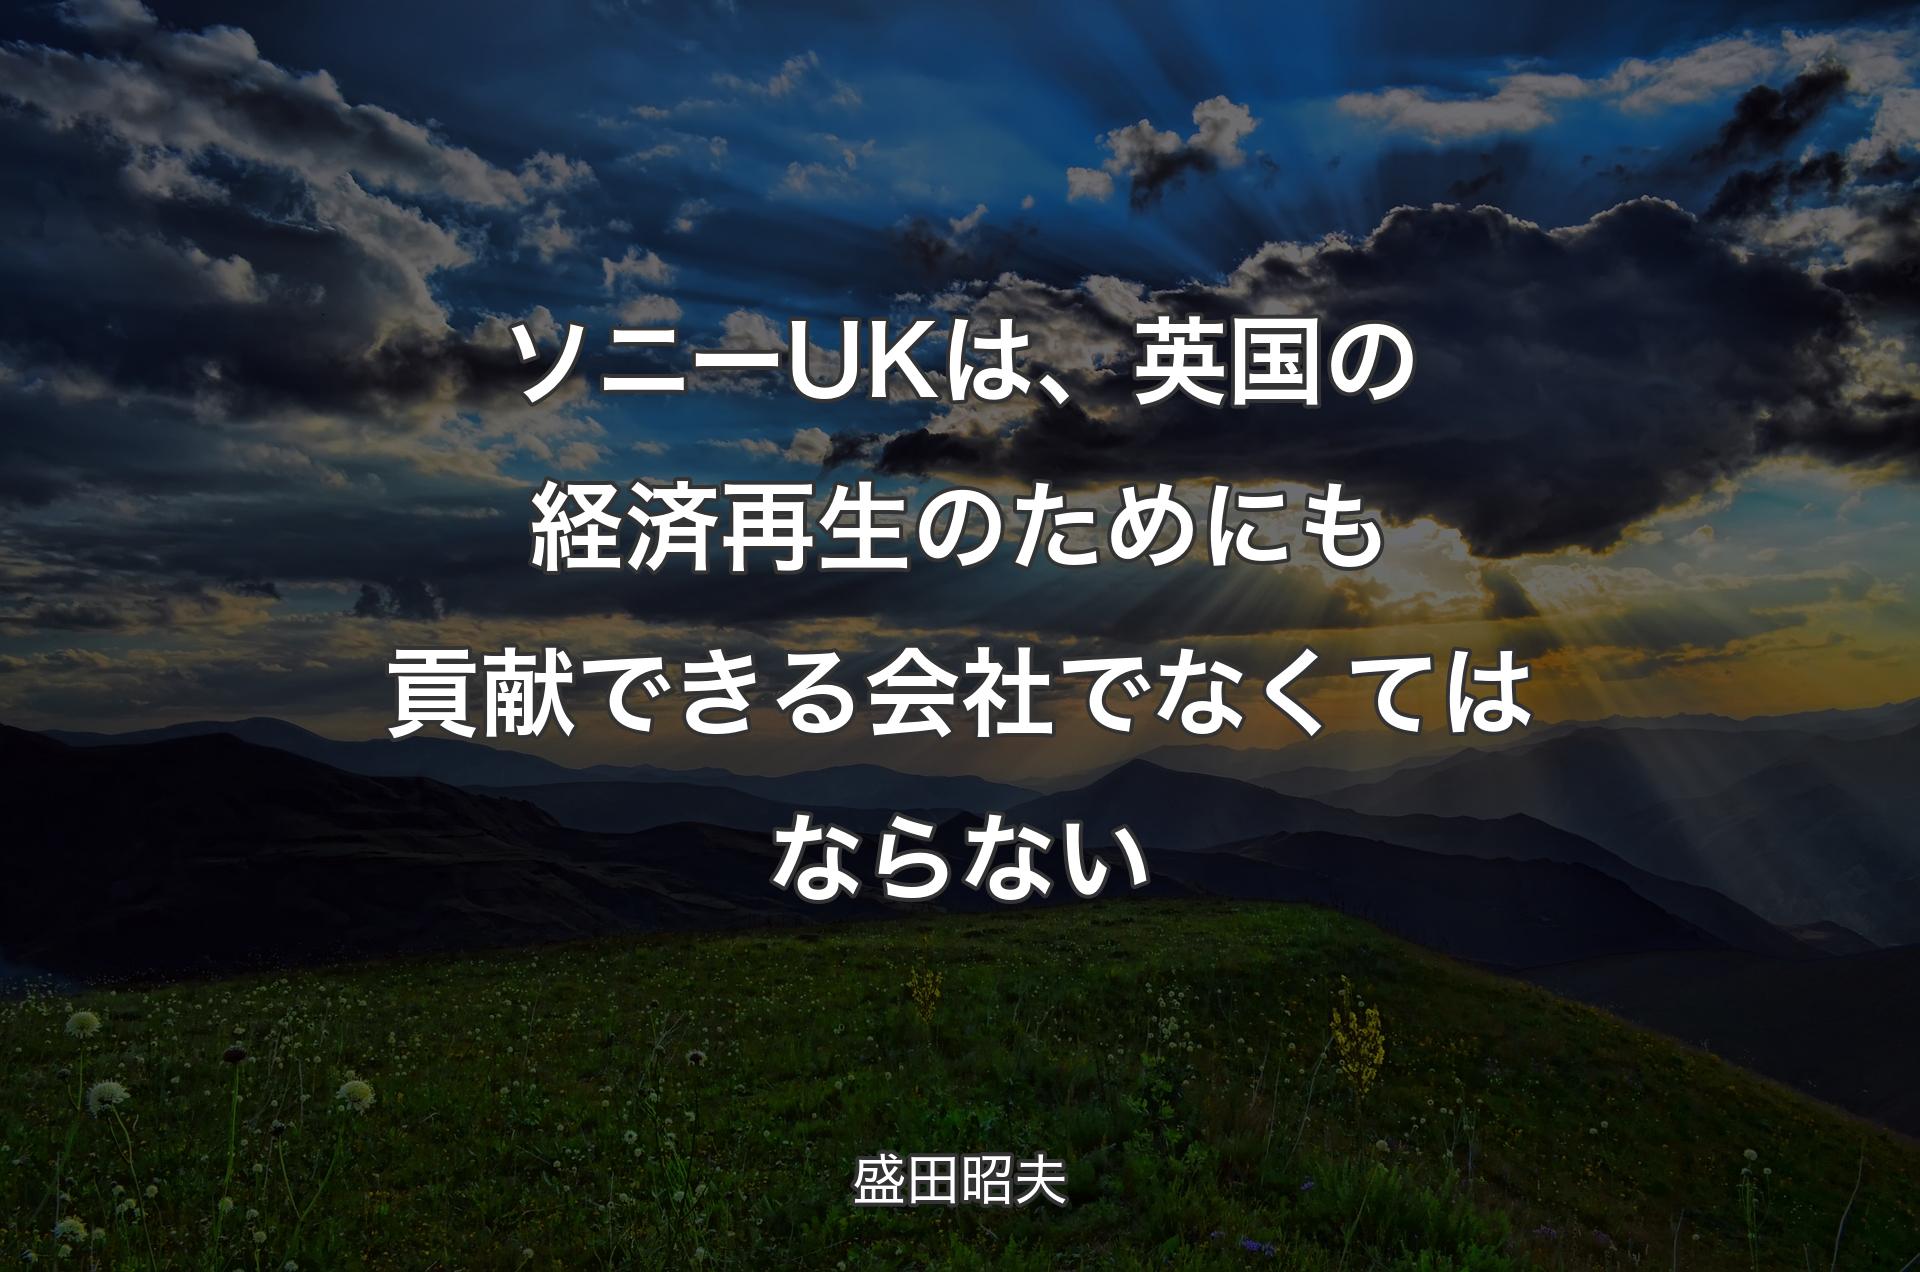 ソニーUKは、英国の経済再生のためにも貢献できる会社でなくてはならない - 盛田昭夫